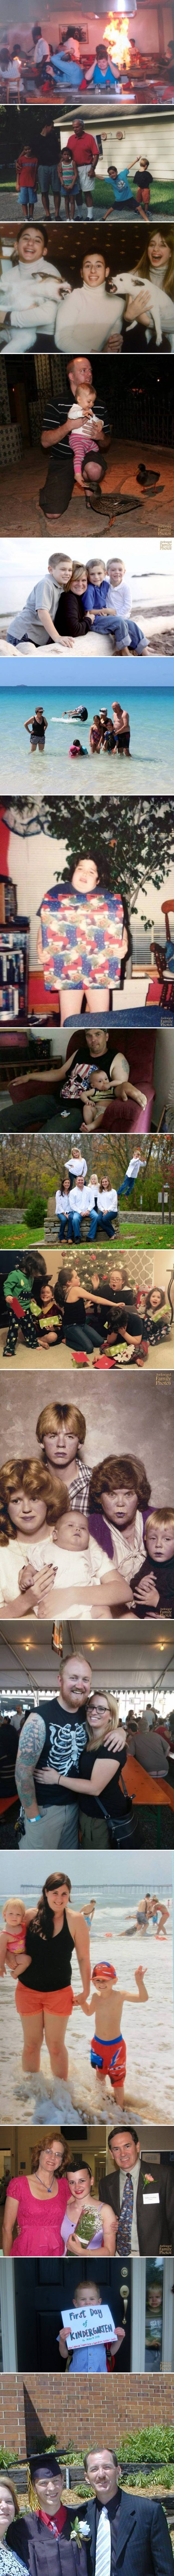 Čudne obiteljske fotografije koje vjerojatno nisu trebale završiti na internetu